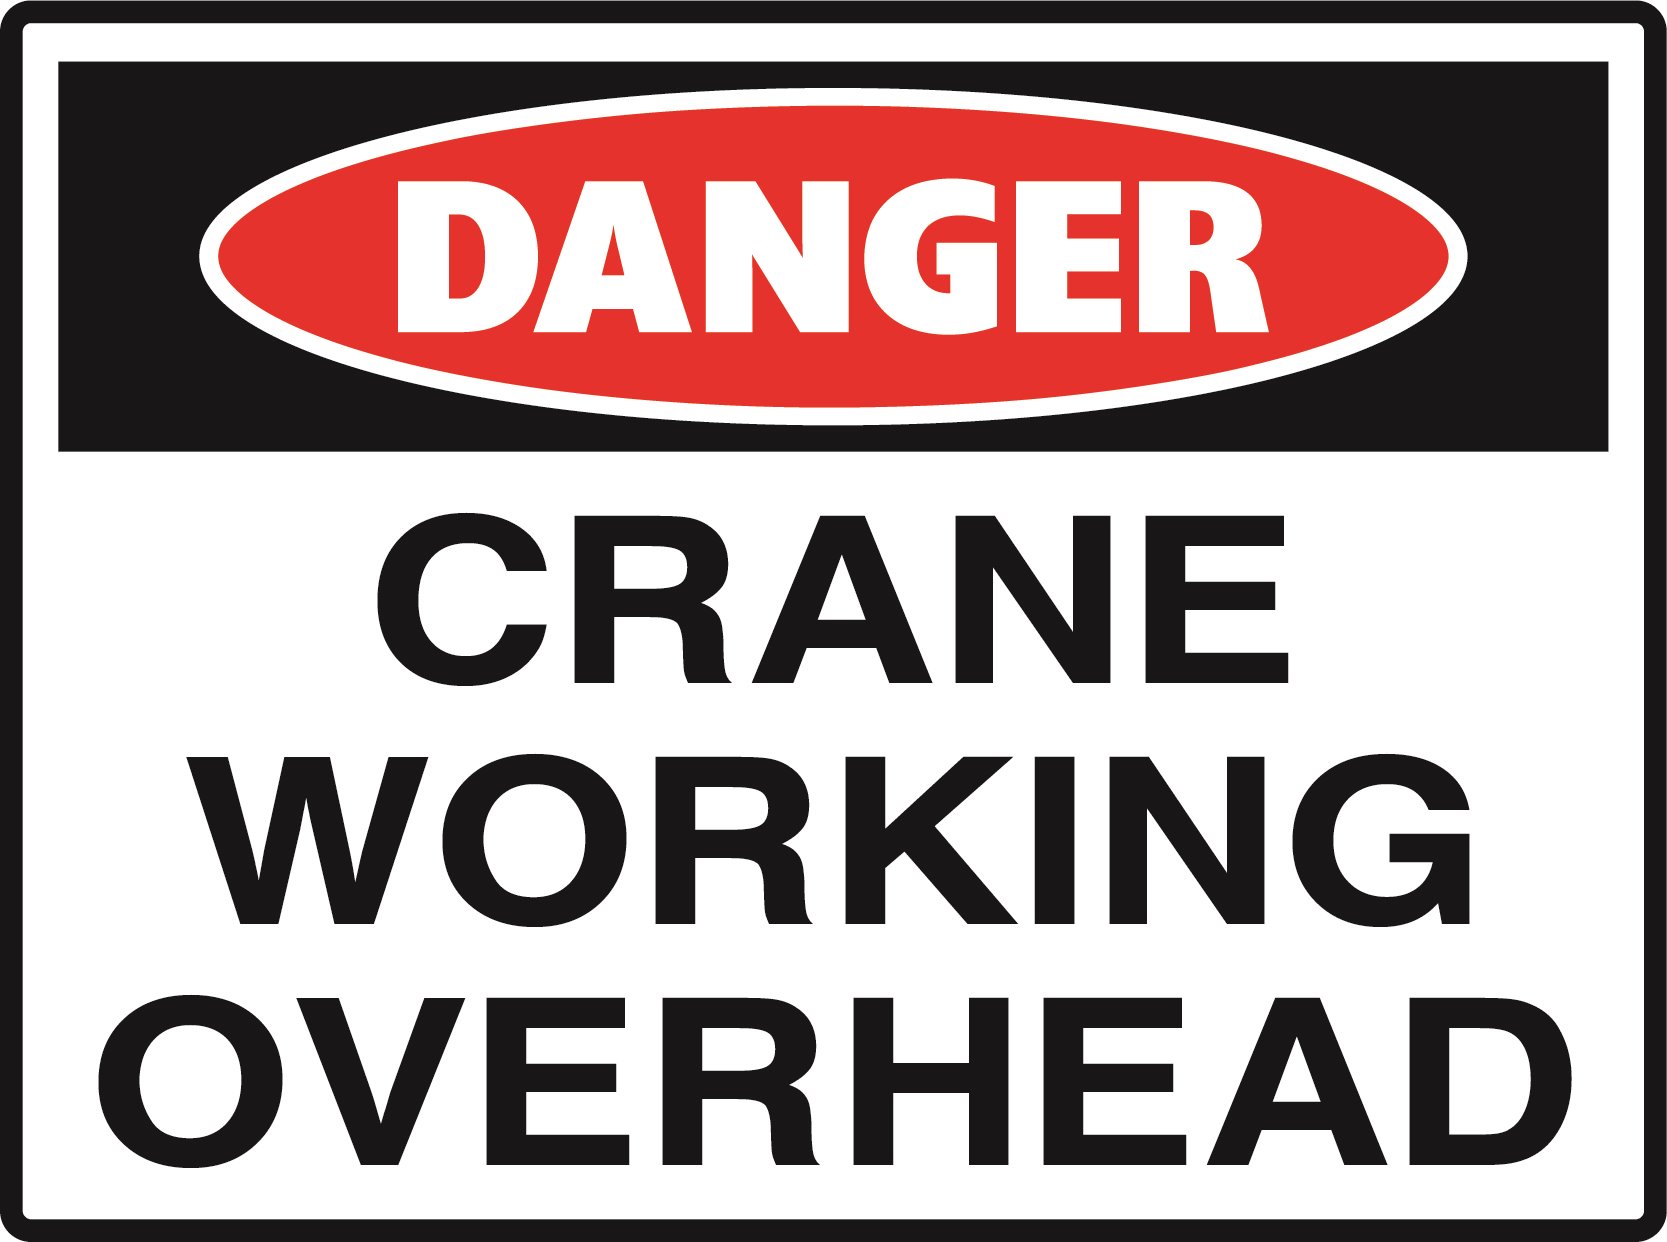 Danger - Crane Working Overhead